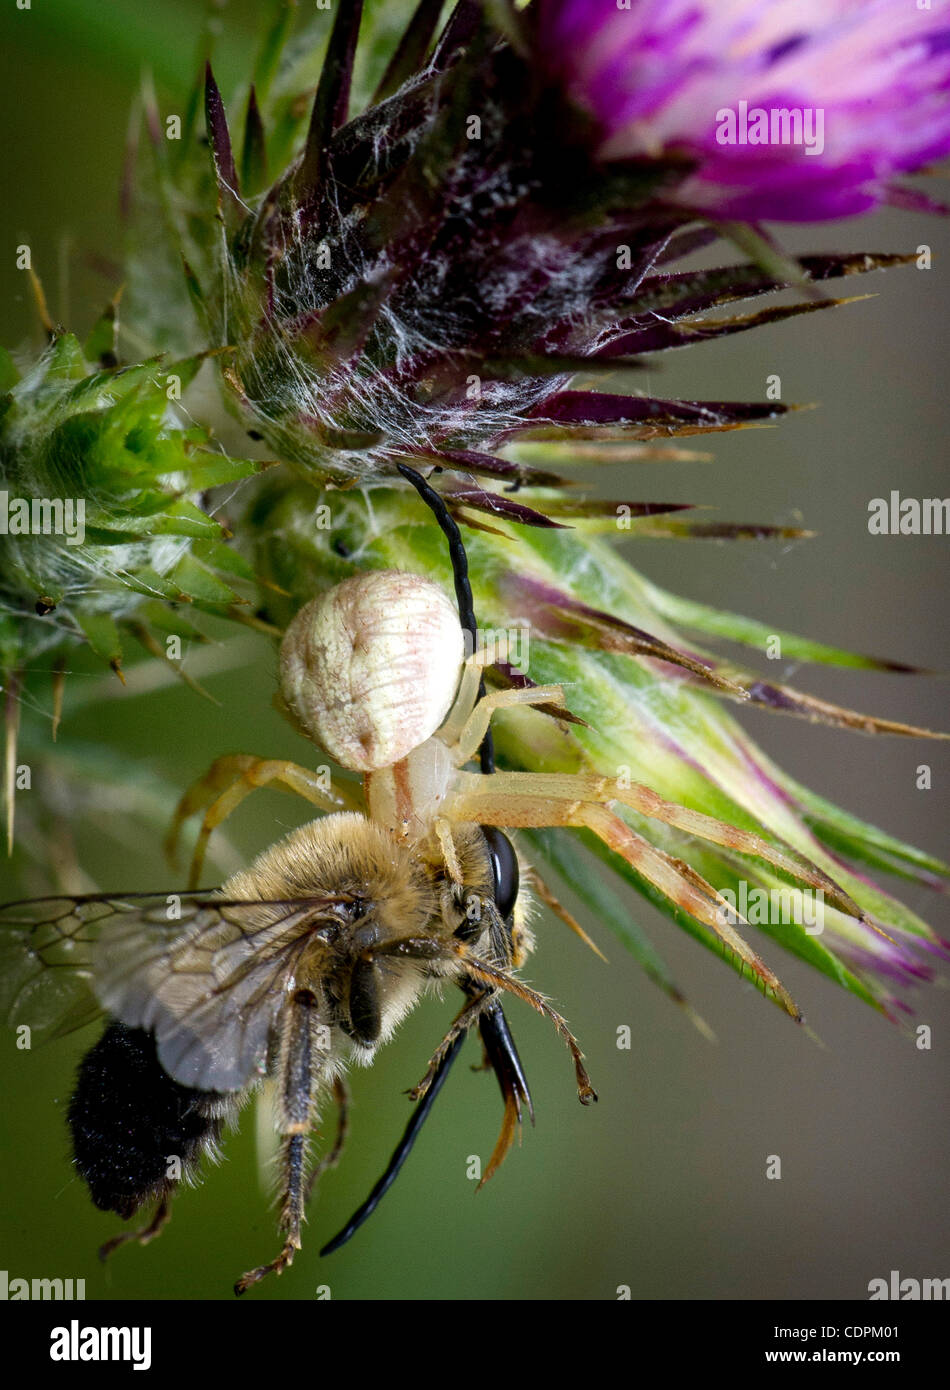 24 maggio 2011 - Kellogg, Oregon, Stati Uniti - Un grandi predatori spider afferra una bee dopo un agguato attacco su un thistle cresce su una collina nei pressi di Kellogg. (Credito Immagine: © Robin Loznak/ZUMAPRESS.com) Foto Stock